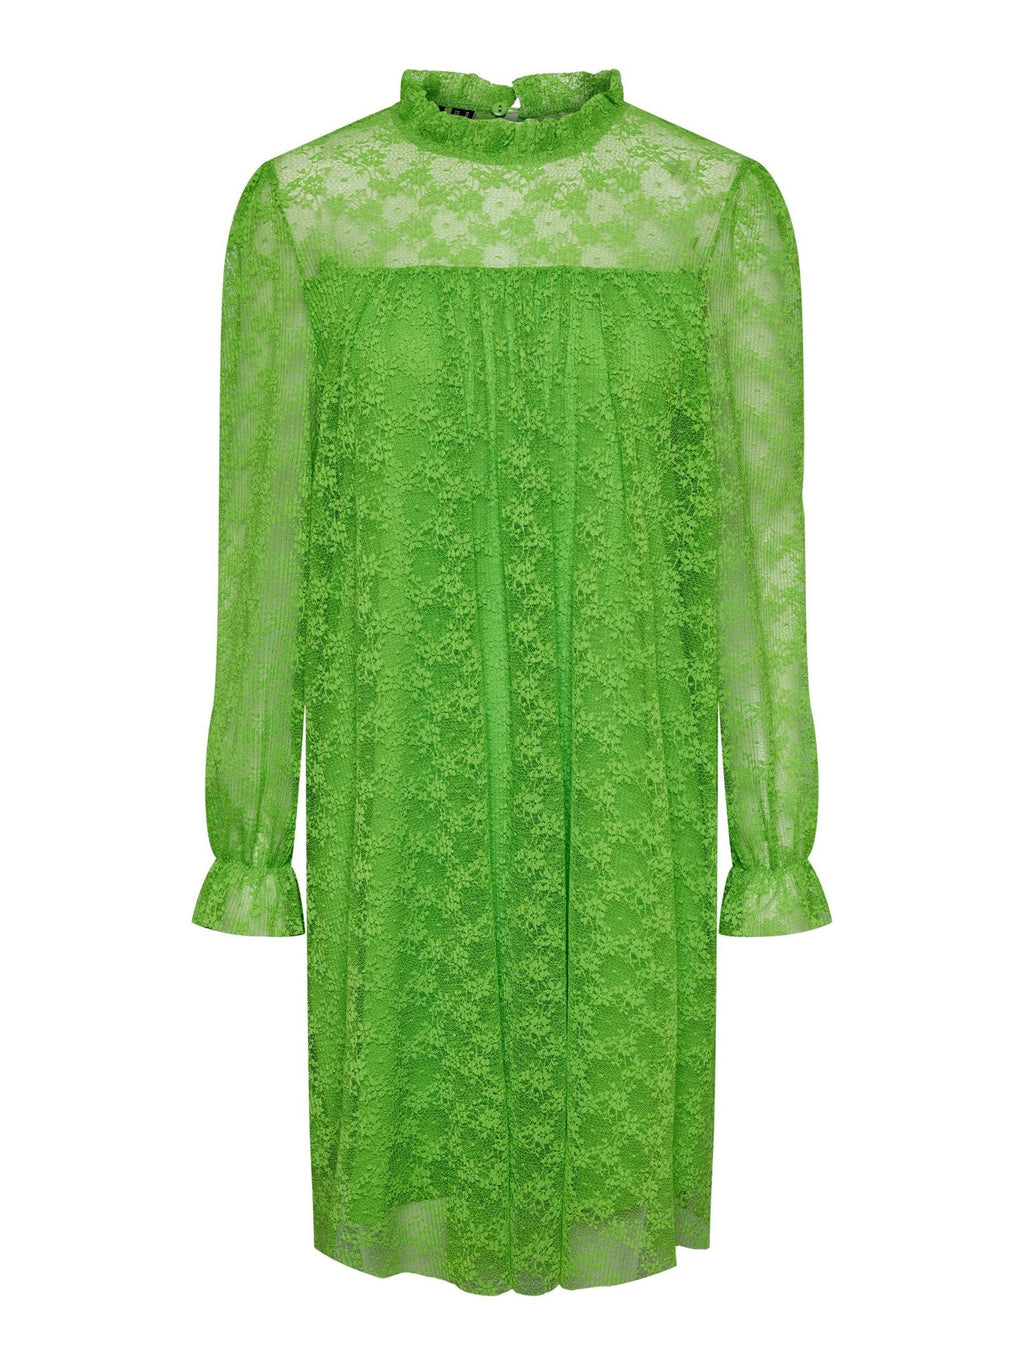 Gegužės nėriniai maxi kjole - žolė žalia